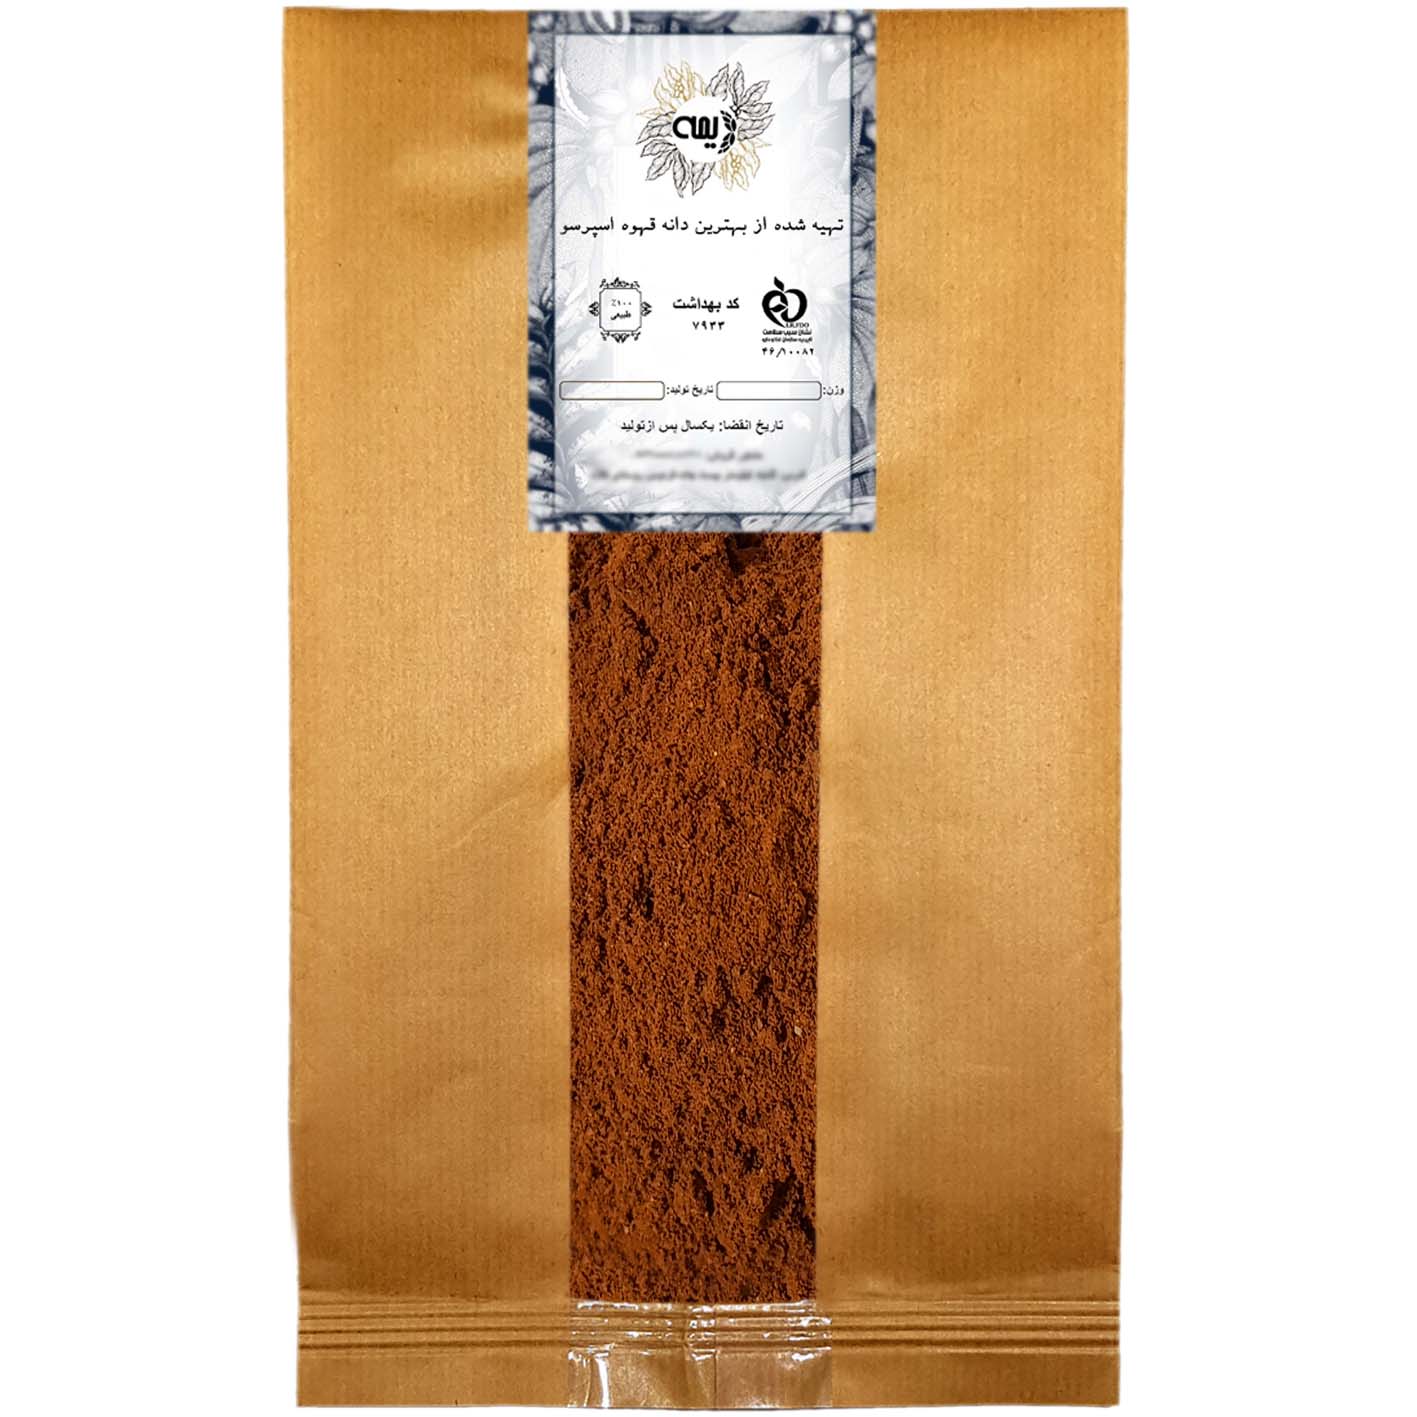 پودر قهوه کلمبیا 100%عربیکا دیمه - 250 گرم